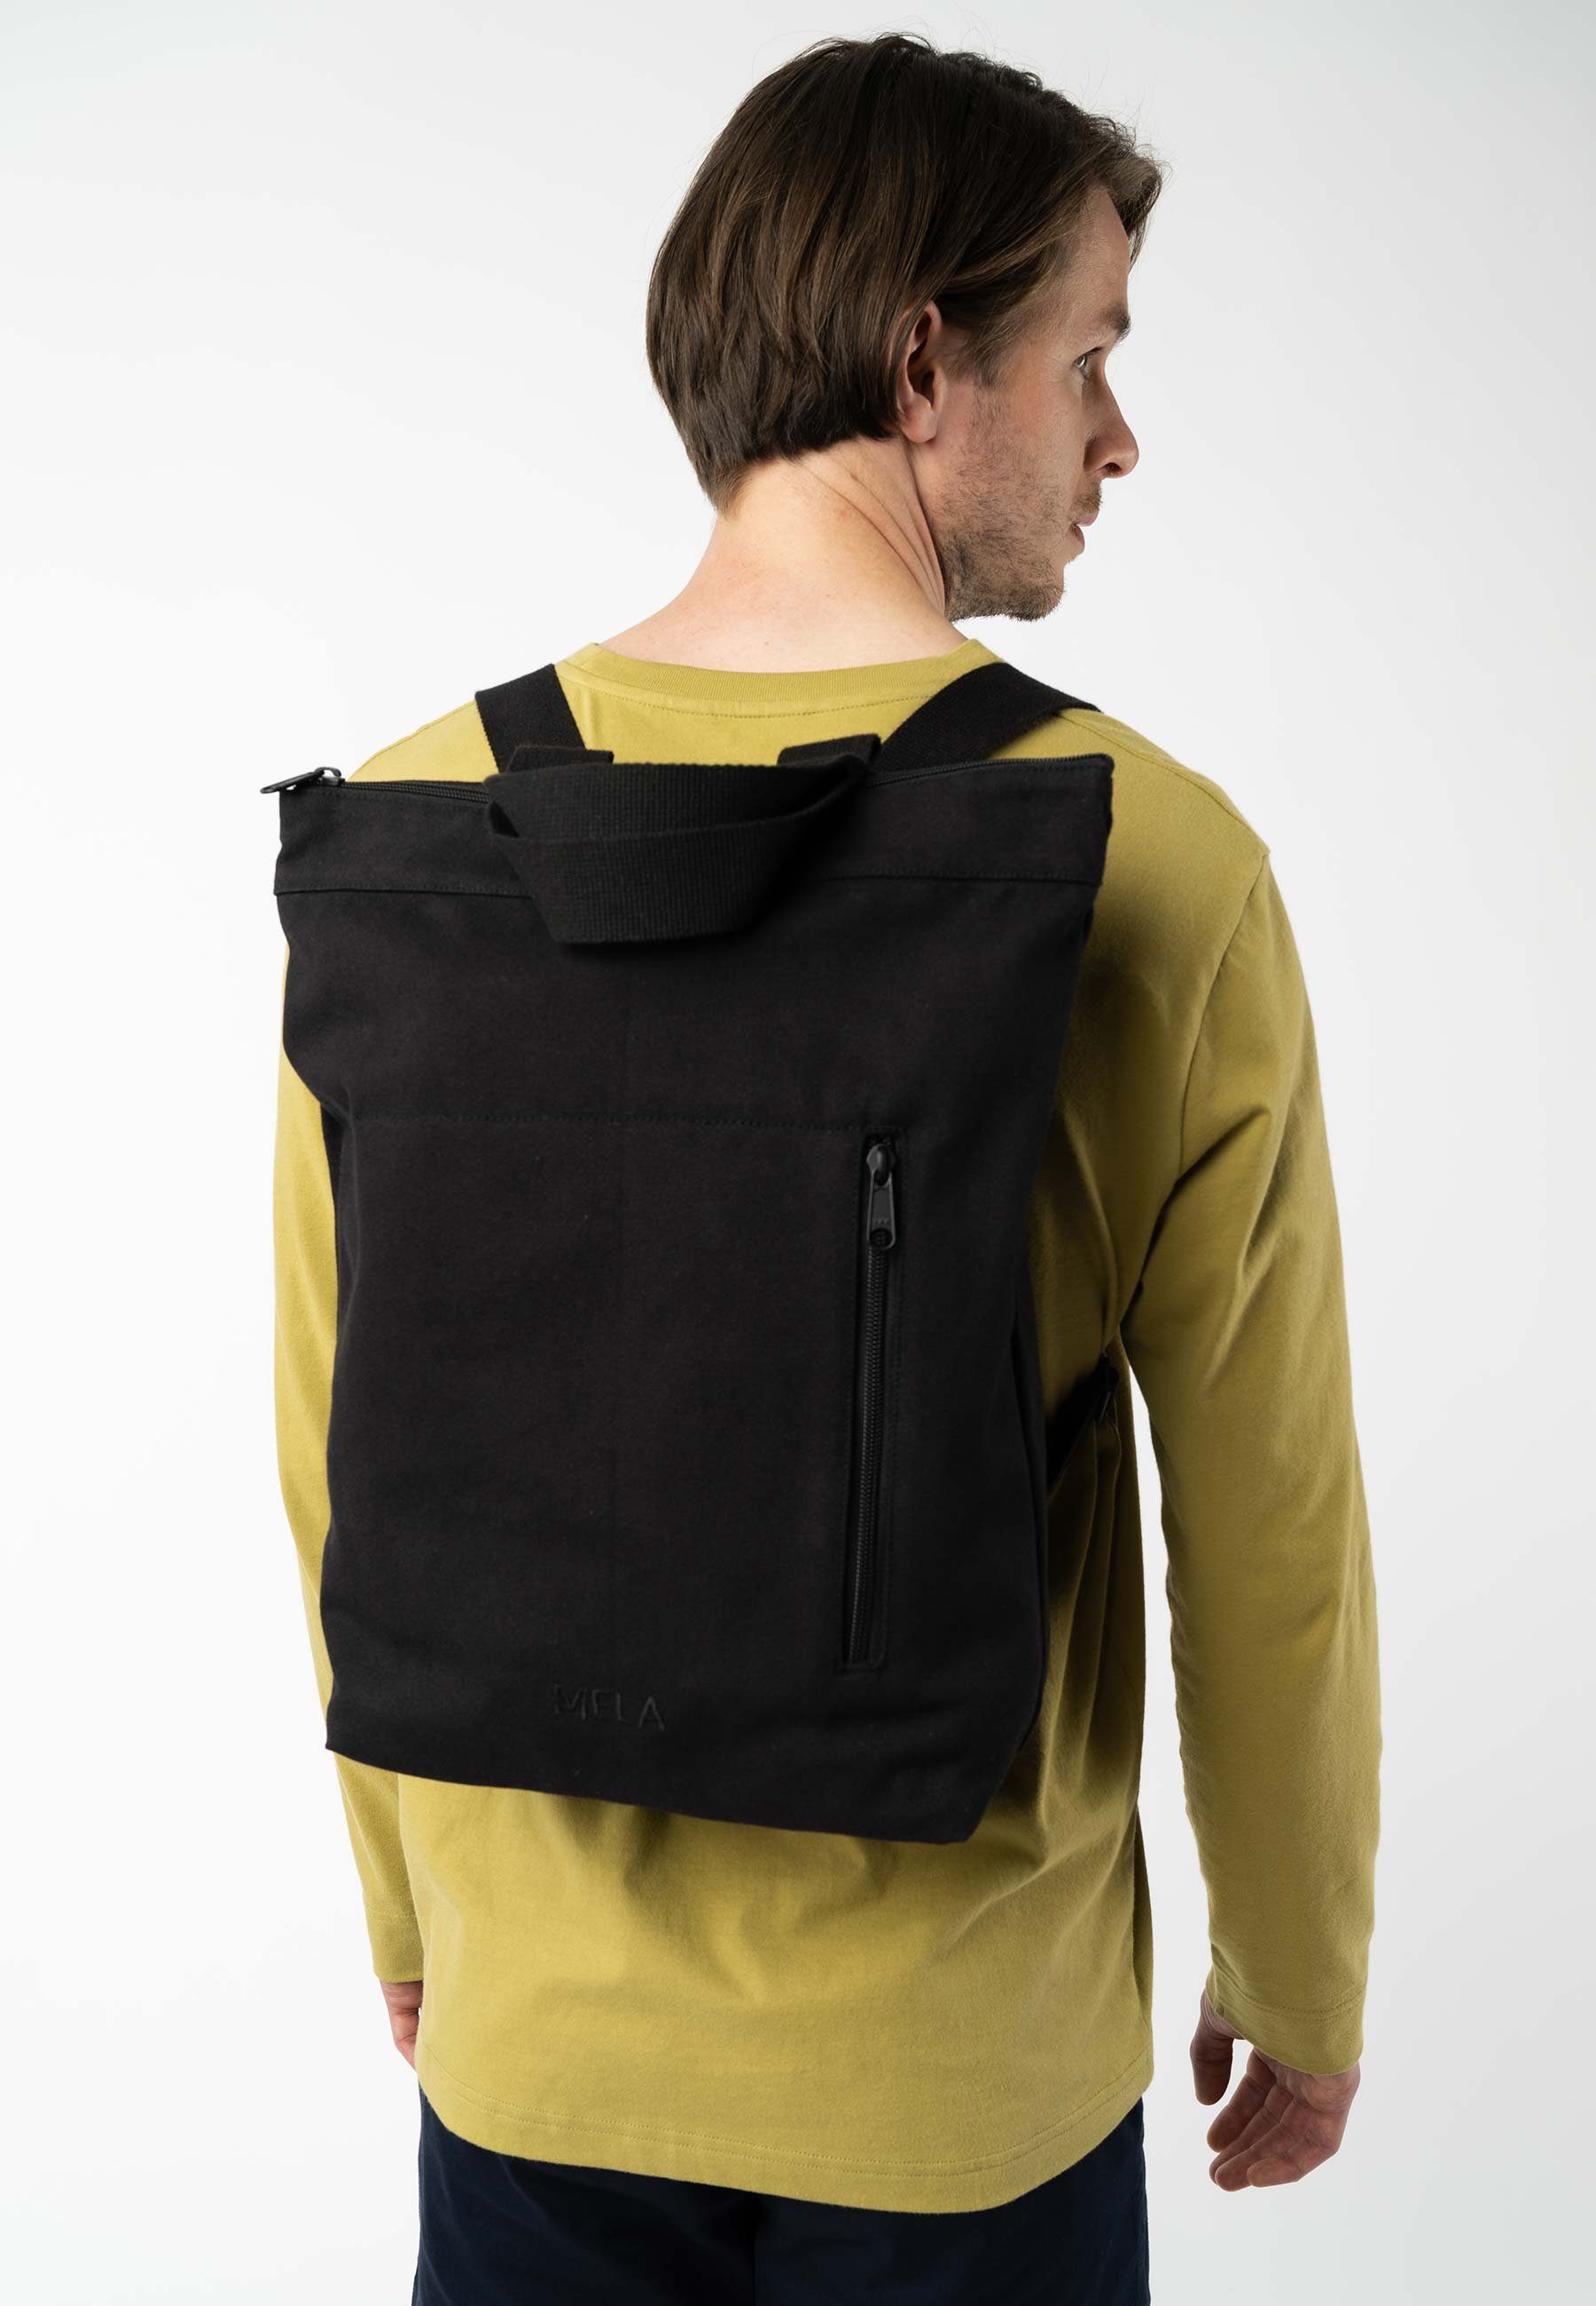 MELA Rucksack Hybrid Rucksack ANIL, Bequem als Rucksack oder Umhängetasche tragbar schwarz